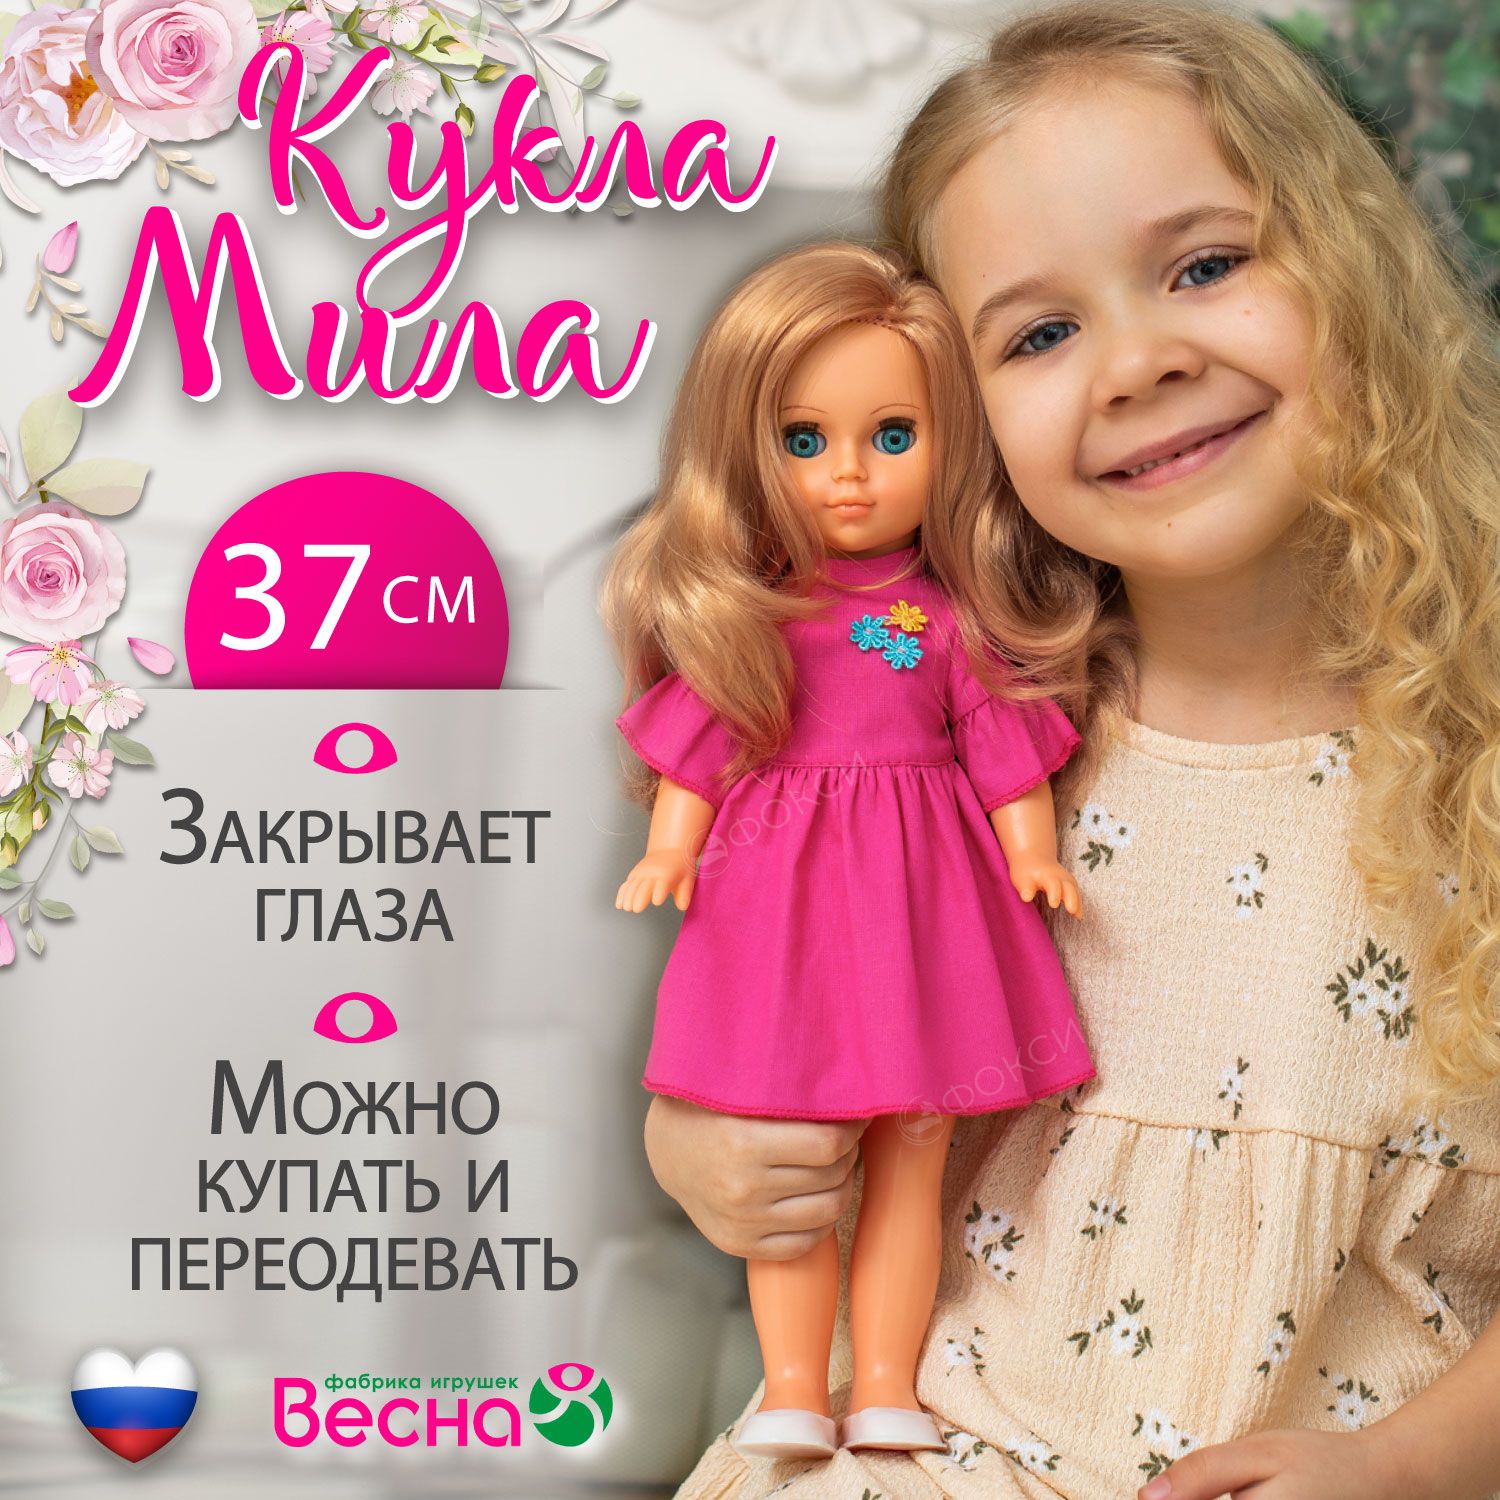 Барби мультики смотреть бесплатно в хорошем качестве на русском